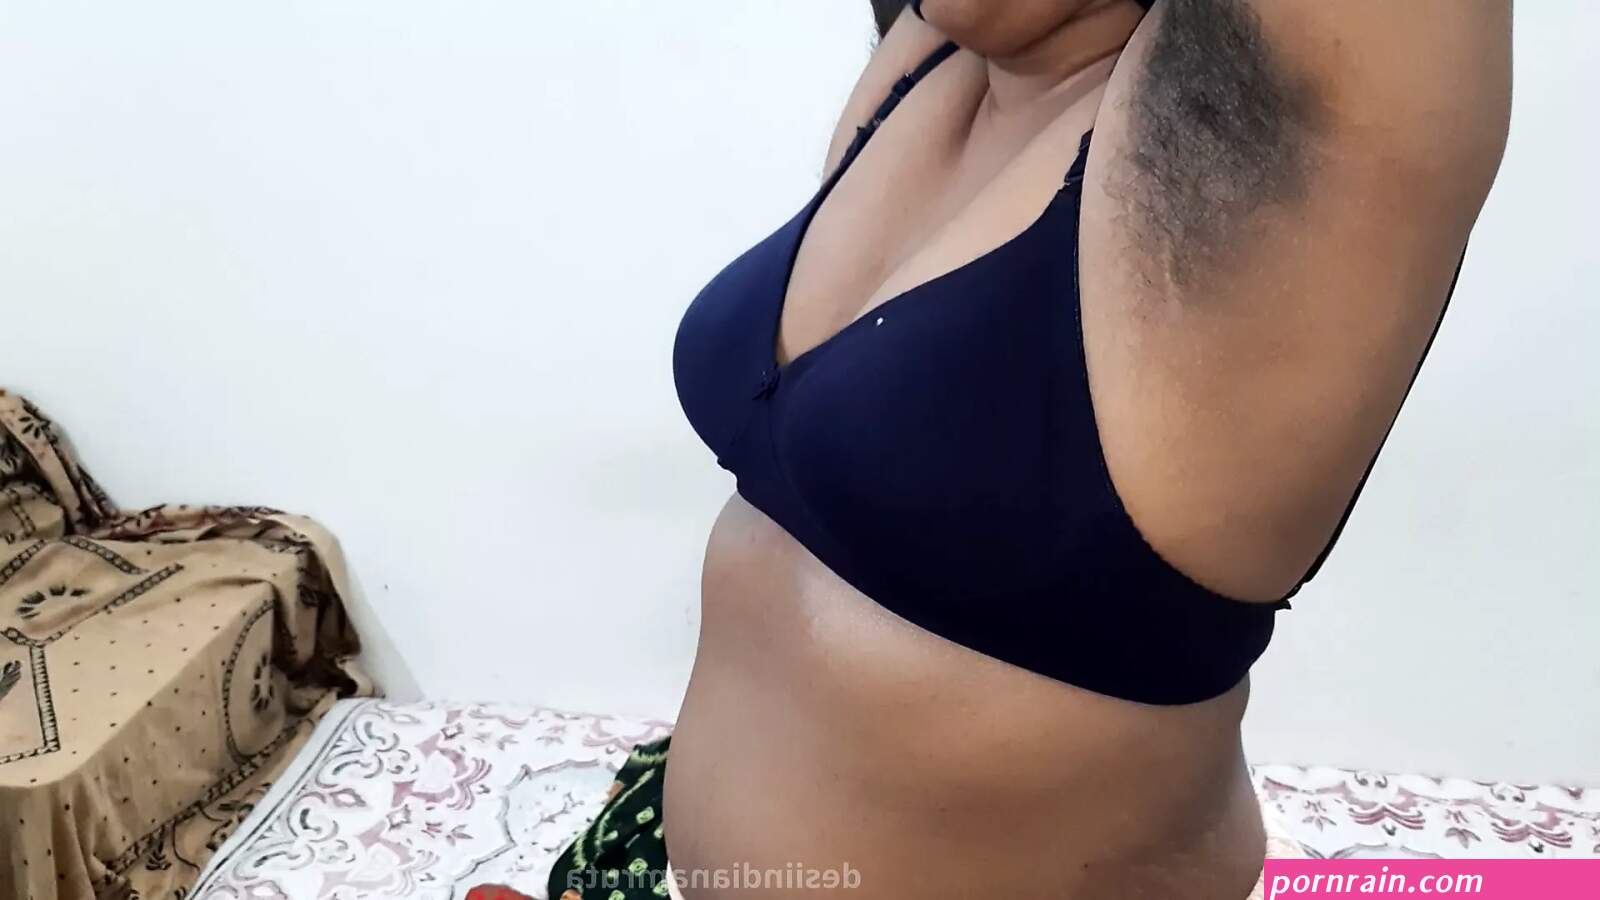 Kerala saree hot breast sex naden villge hd image | PORNrain.com